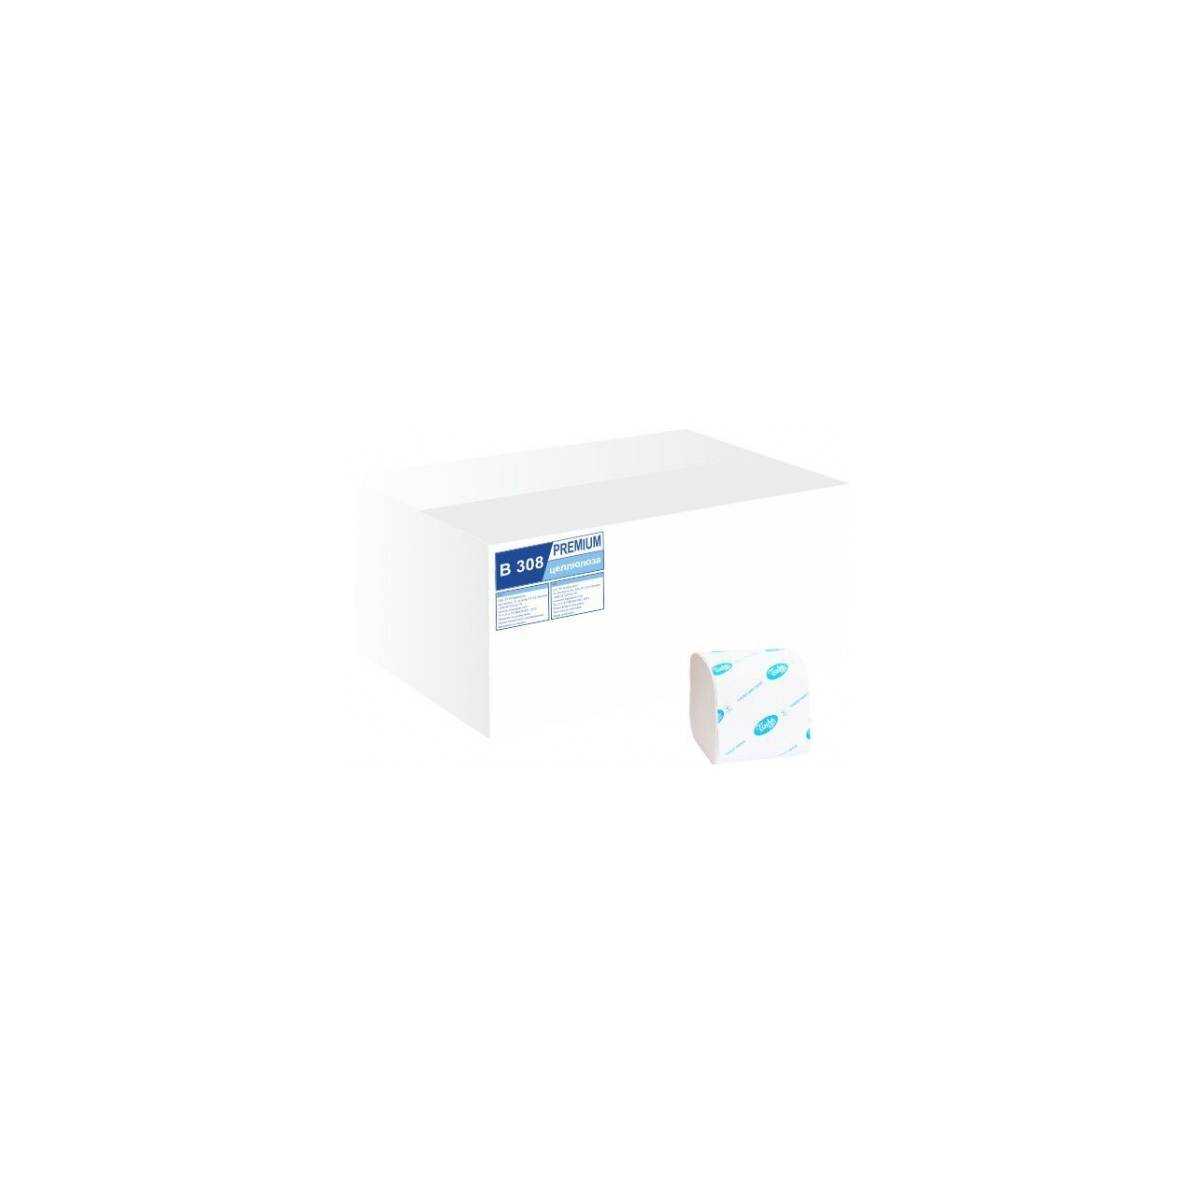 Туалетная бумага в пачке BASIC (ящик/40 пачек по 226 листов) В308 Tischa Papier